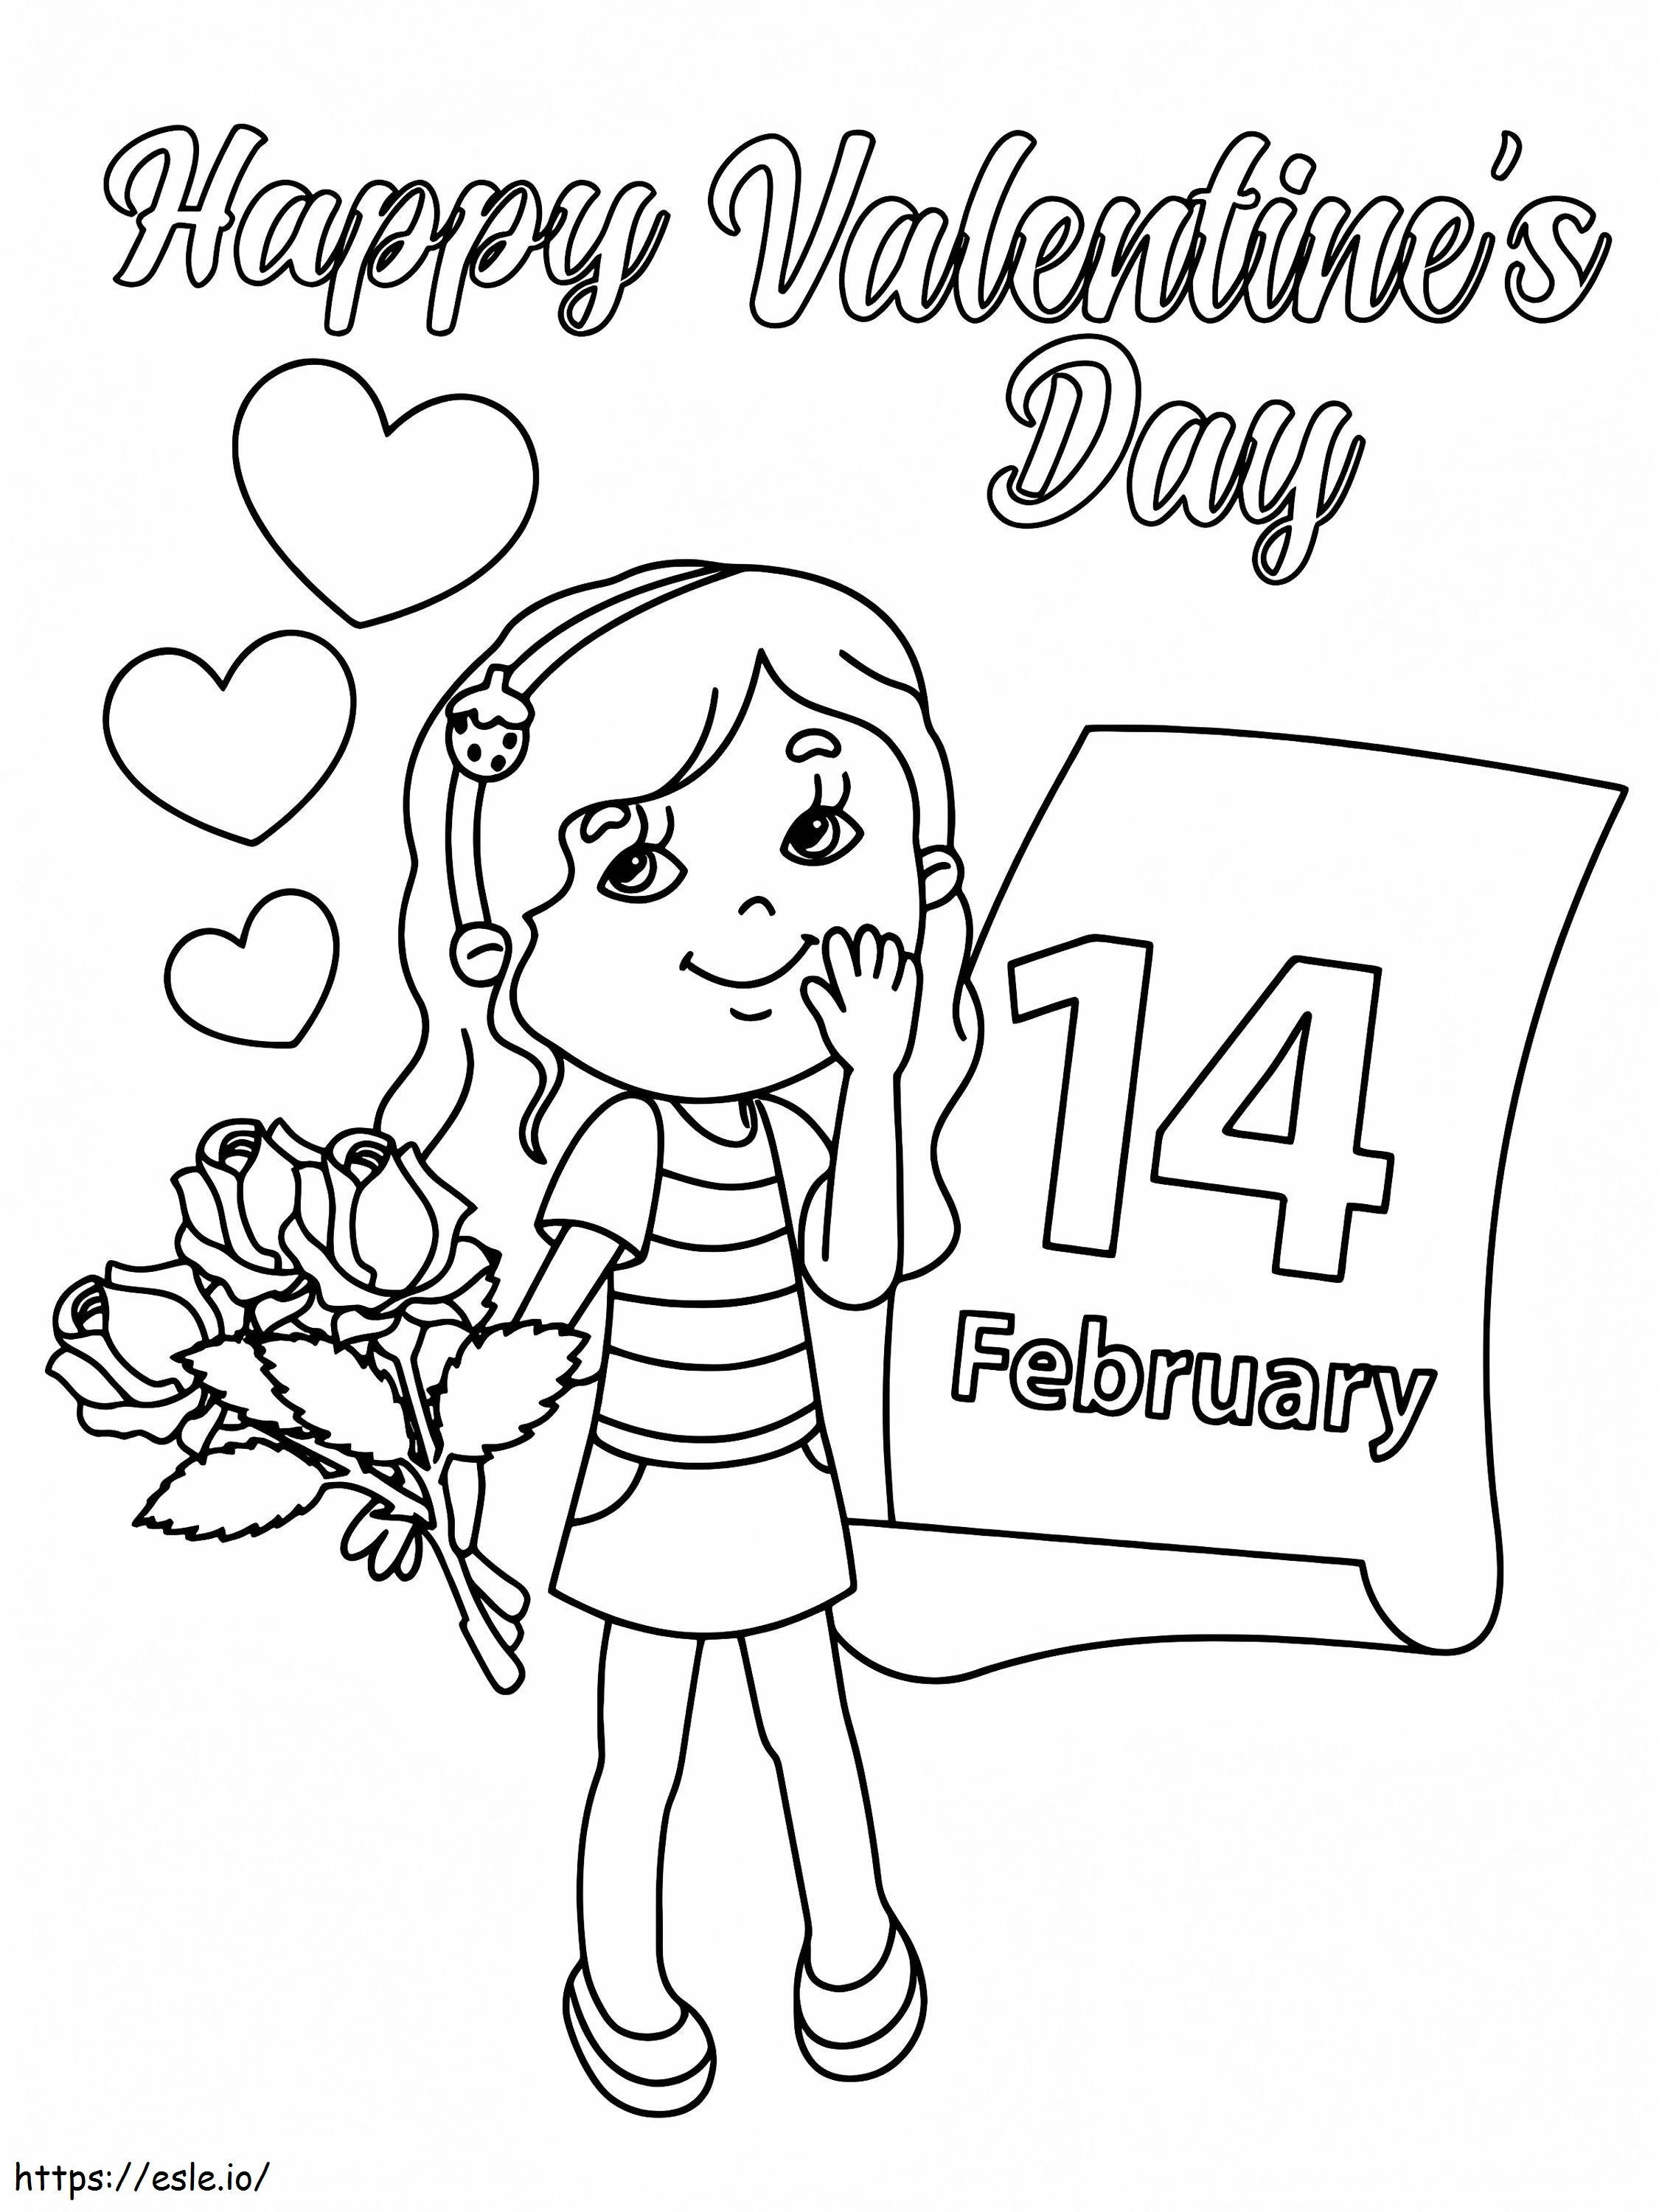 Coloriage 14 février Saint Valentin à imprimer dessin